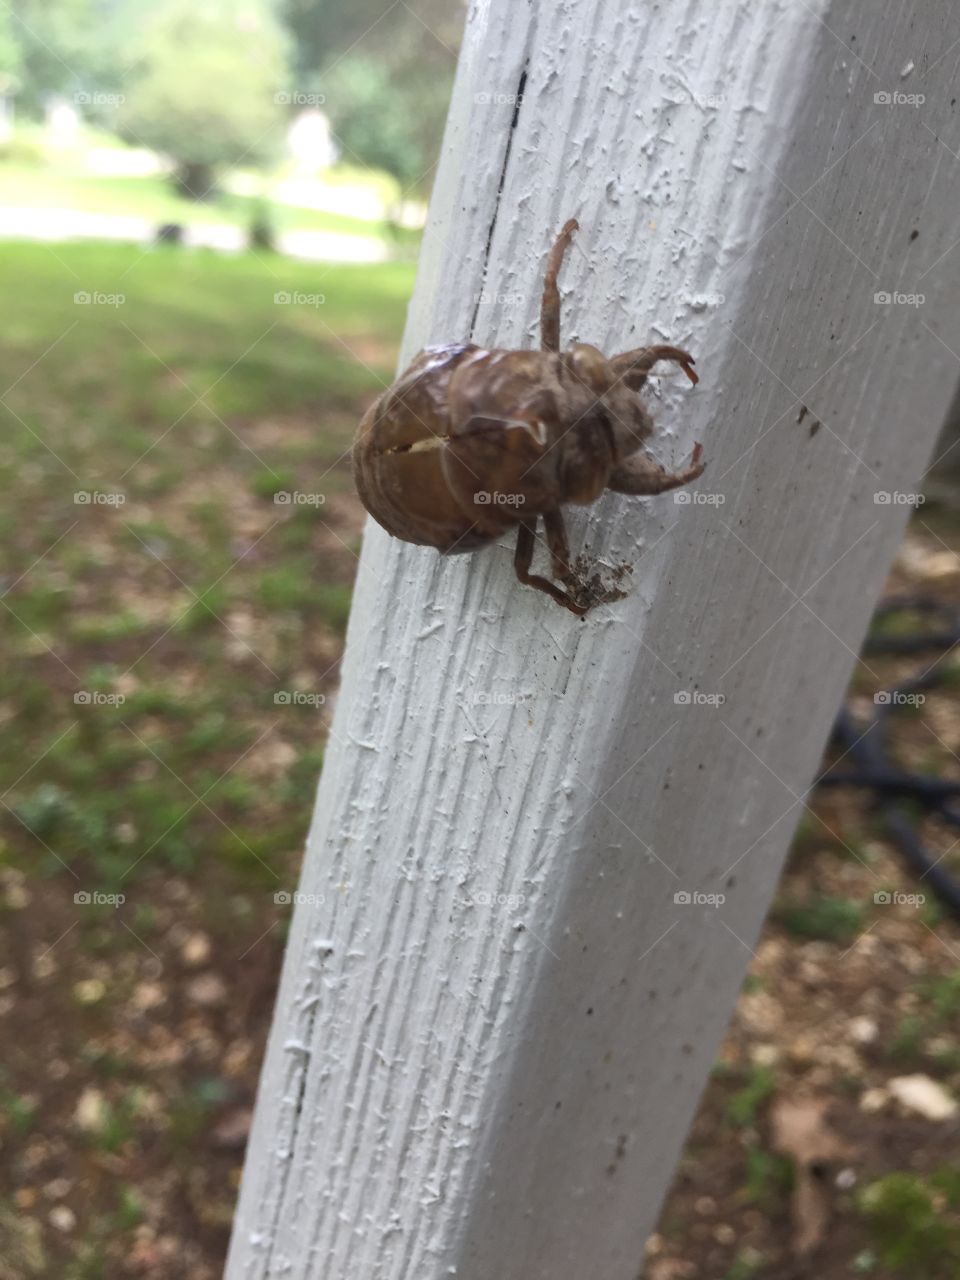 Big bug